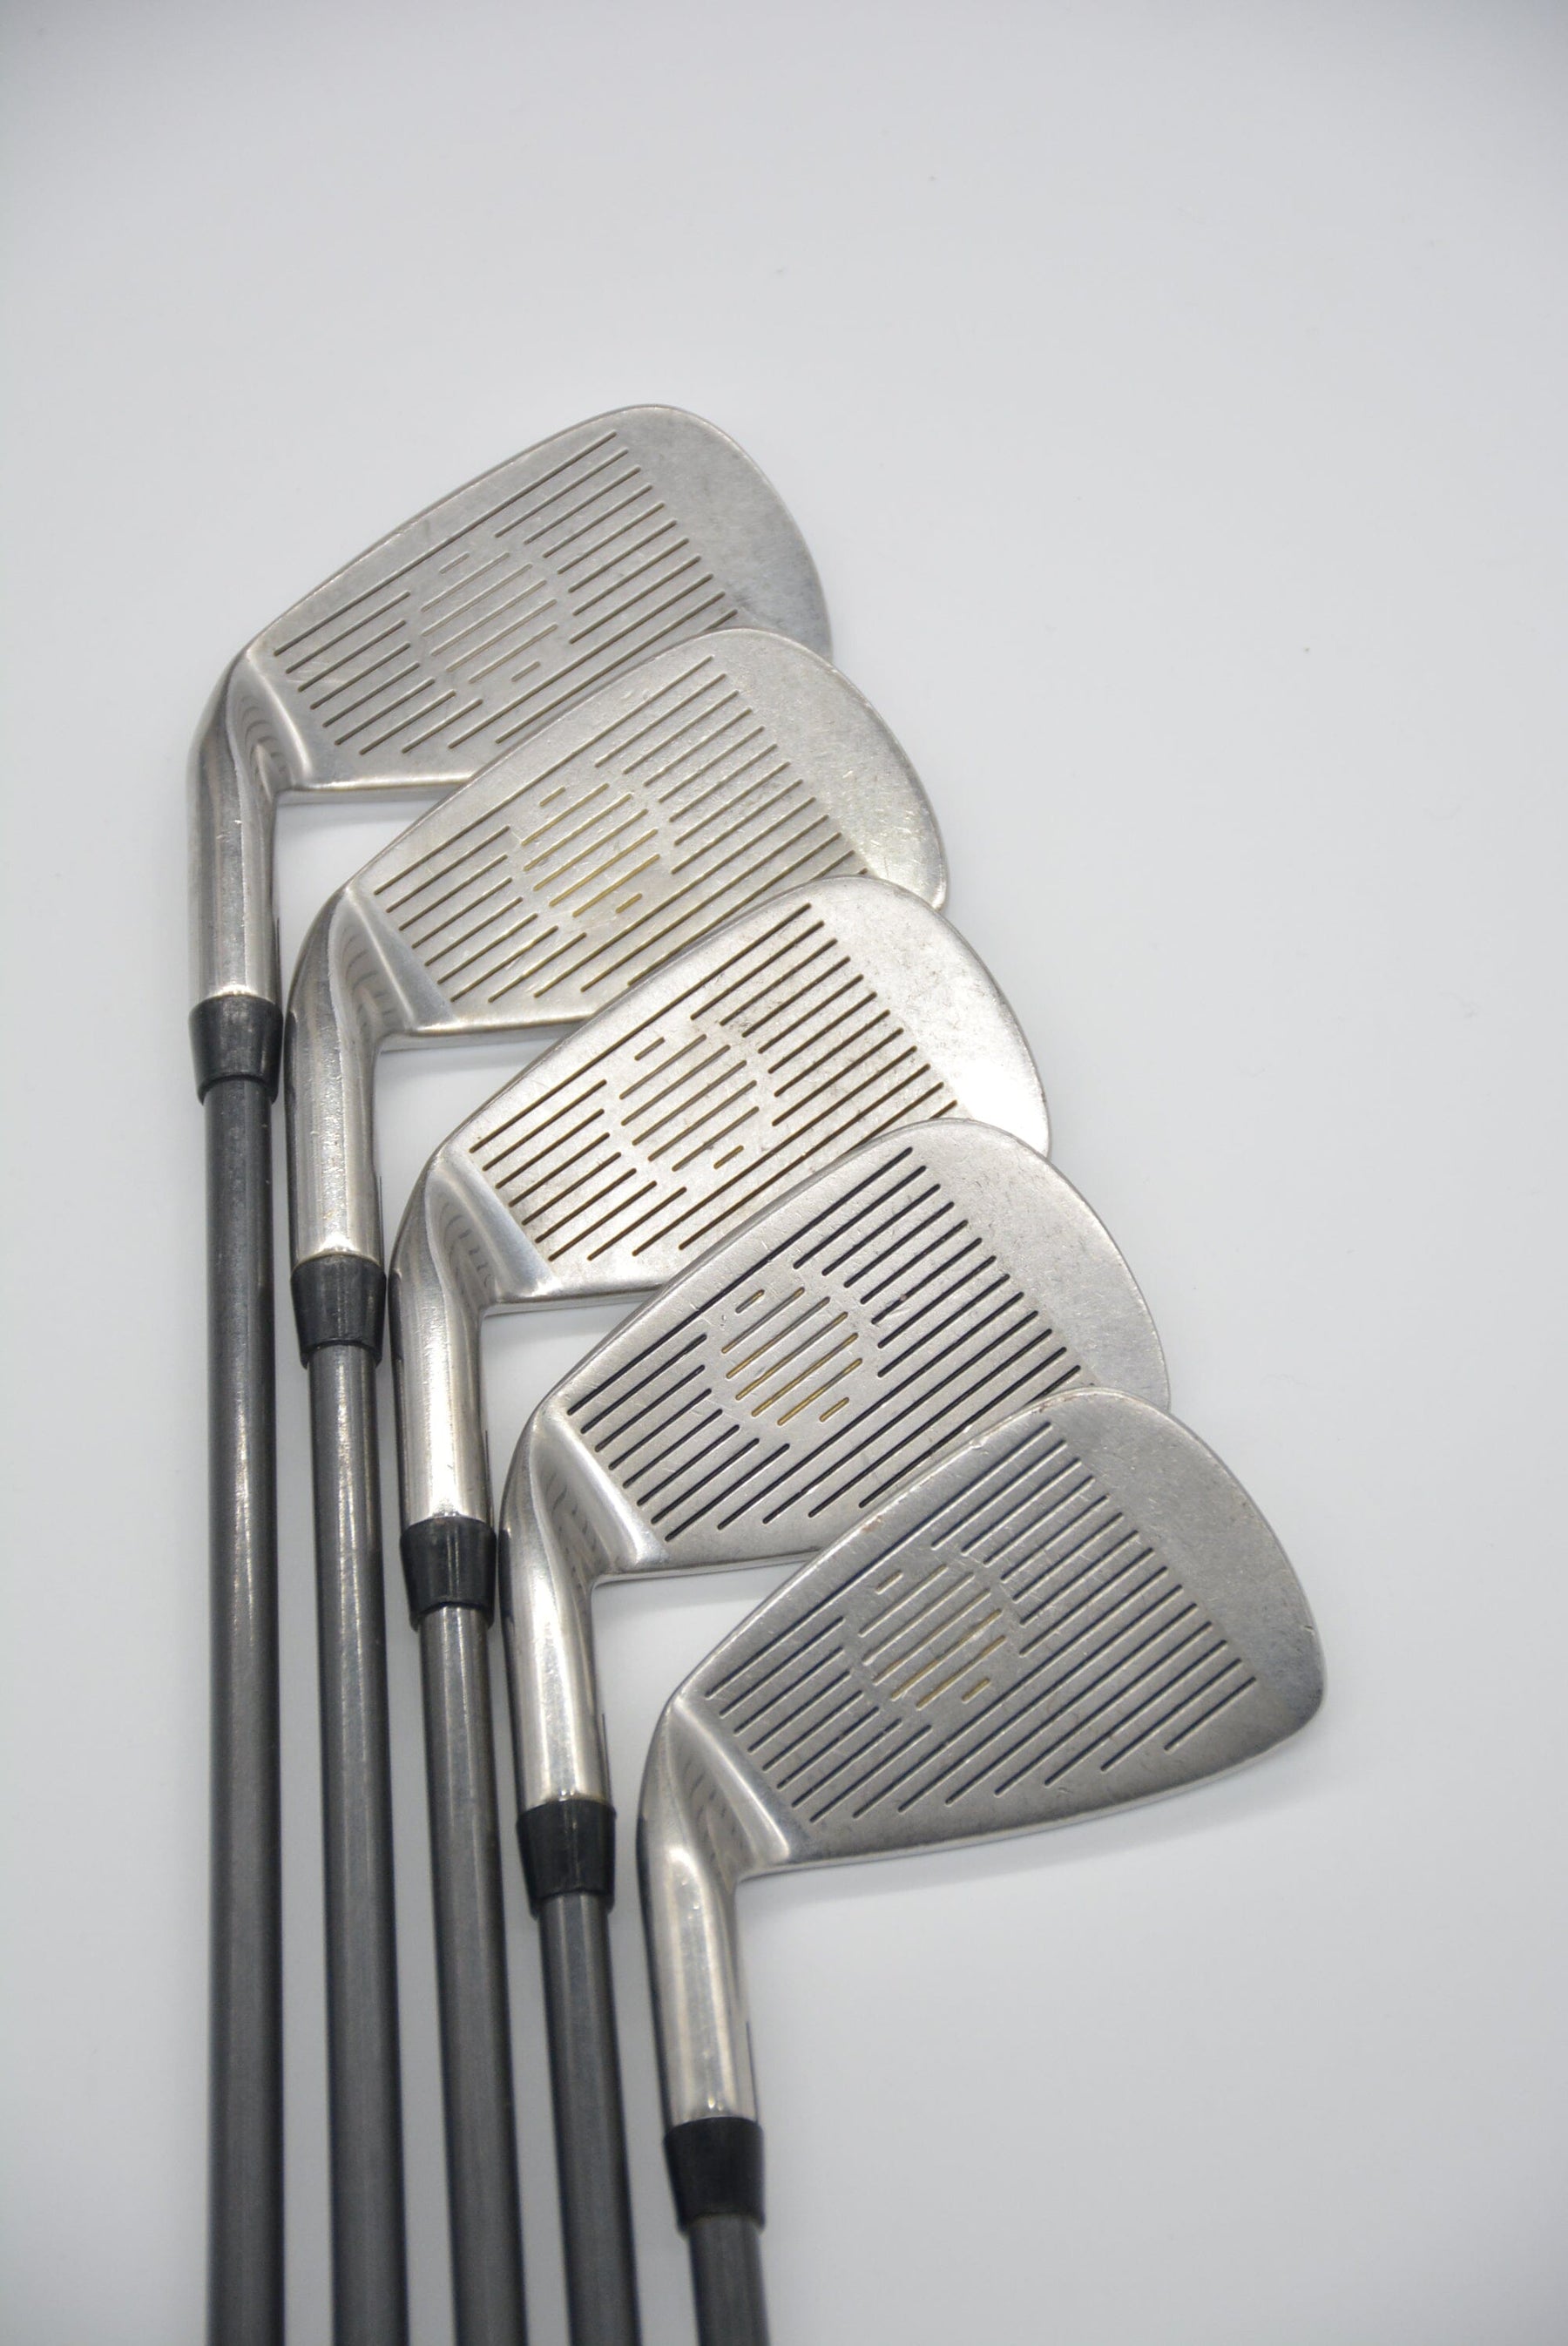 Cobra King OS 4-6, 8, 9 Iron Set R Flex Golf Clubs GolfRoots 